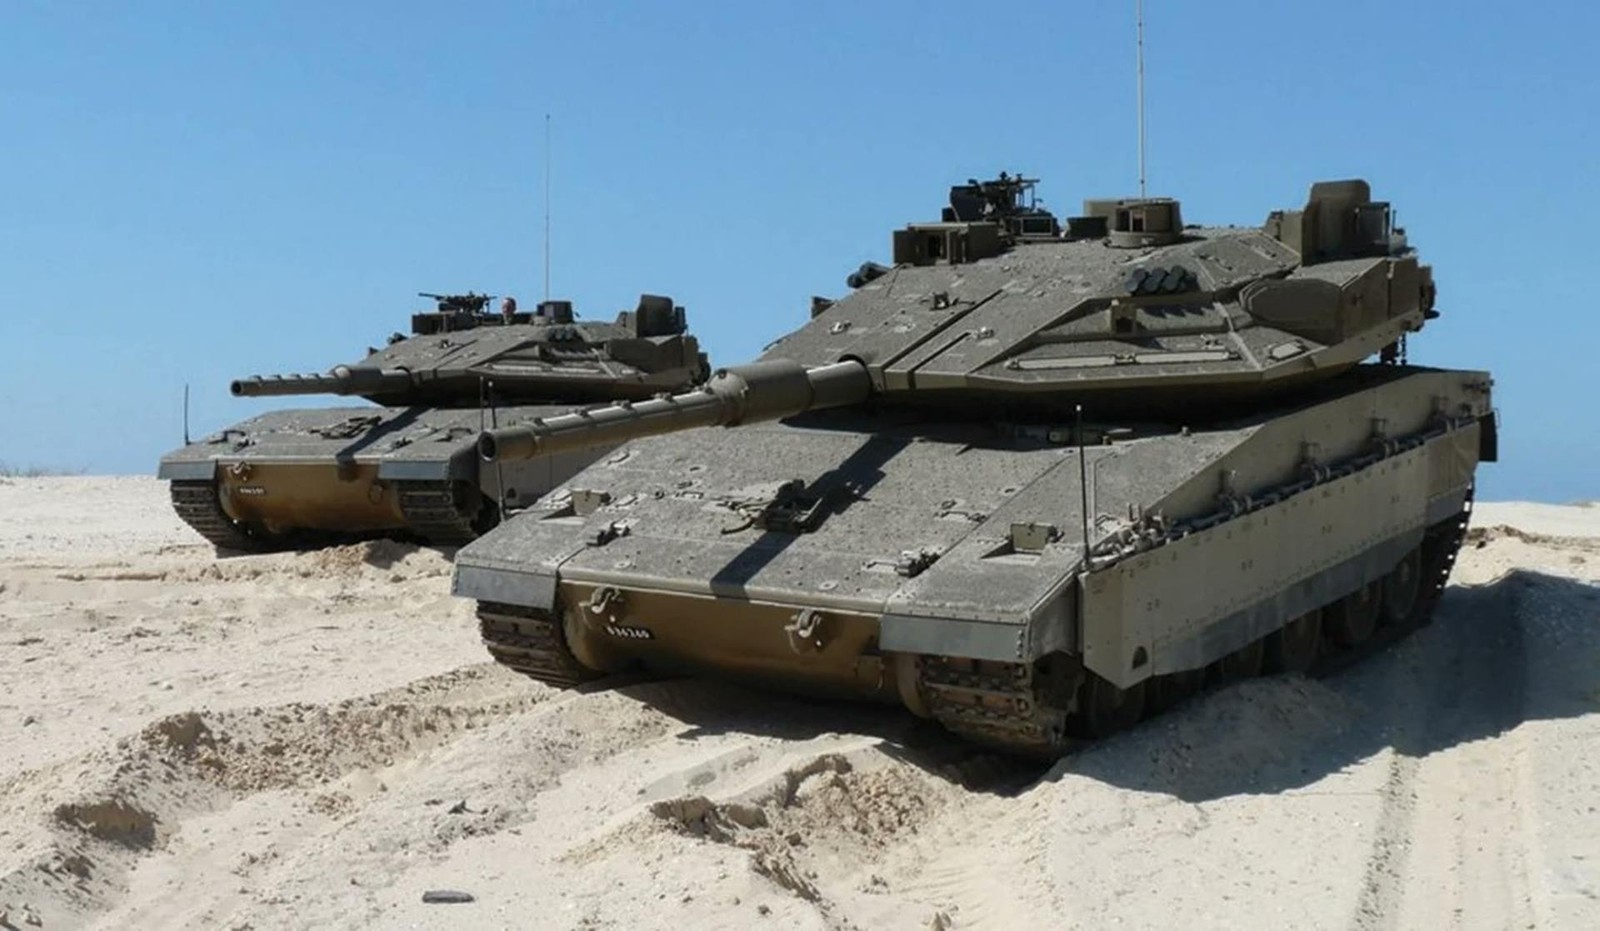 Nowy izraelski czołg, ulepszony Merkawa Mk 4 "Barak", Merkawa Mk 4, Merkawa Mk 4 Barak